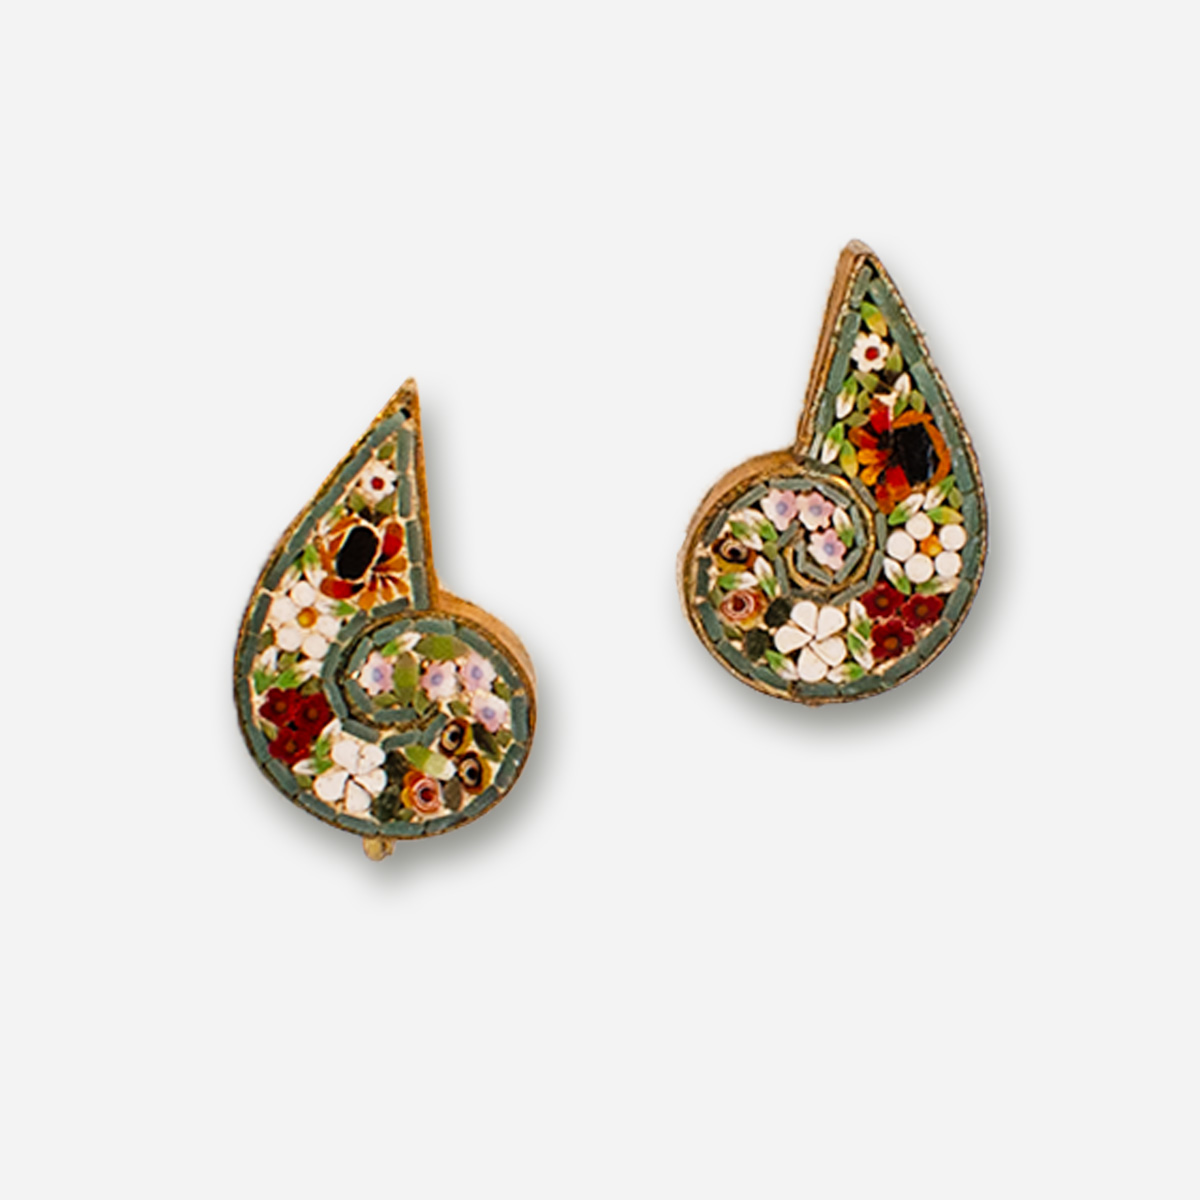 Vintage micro mosaic earrings, Italy